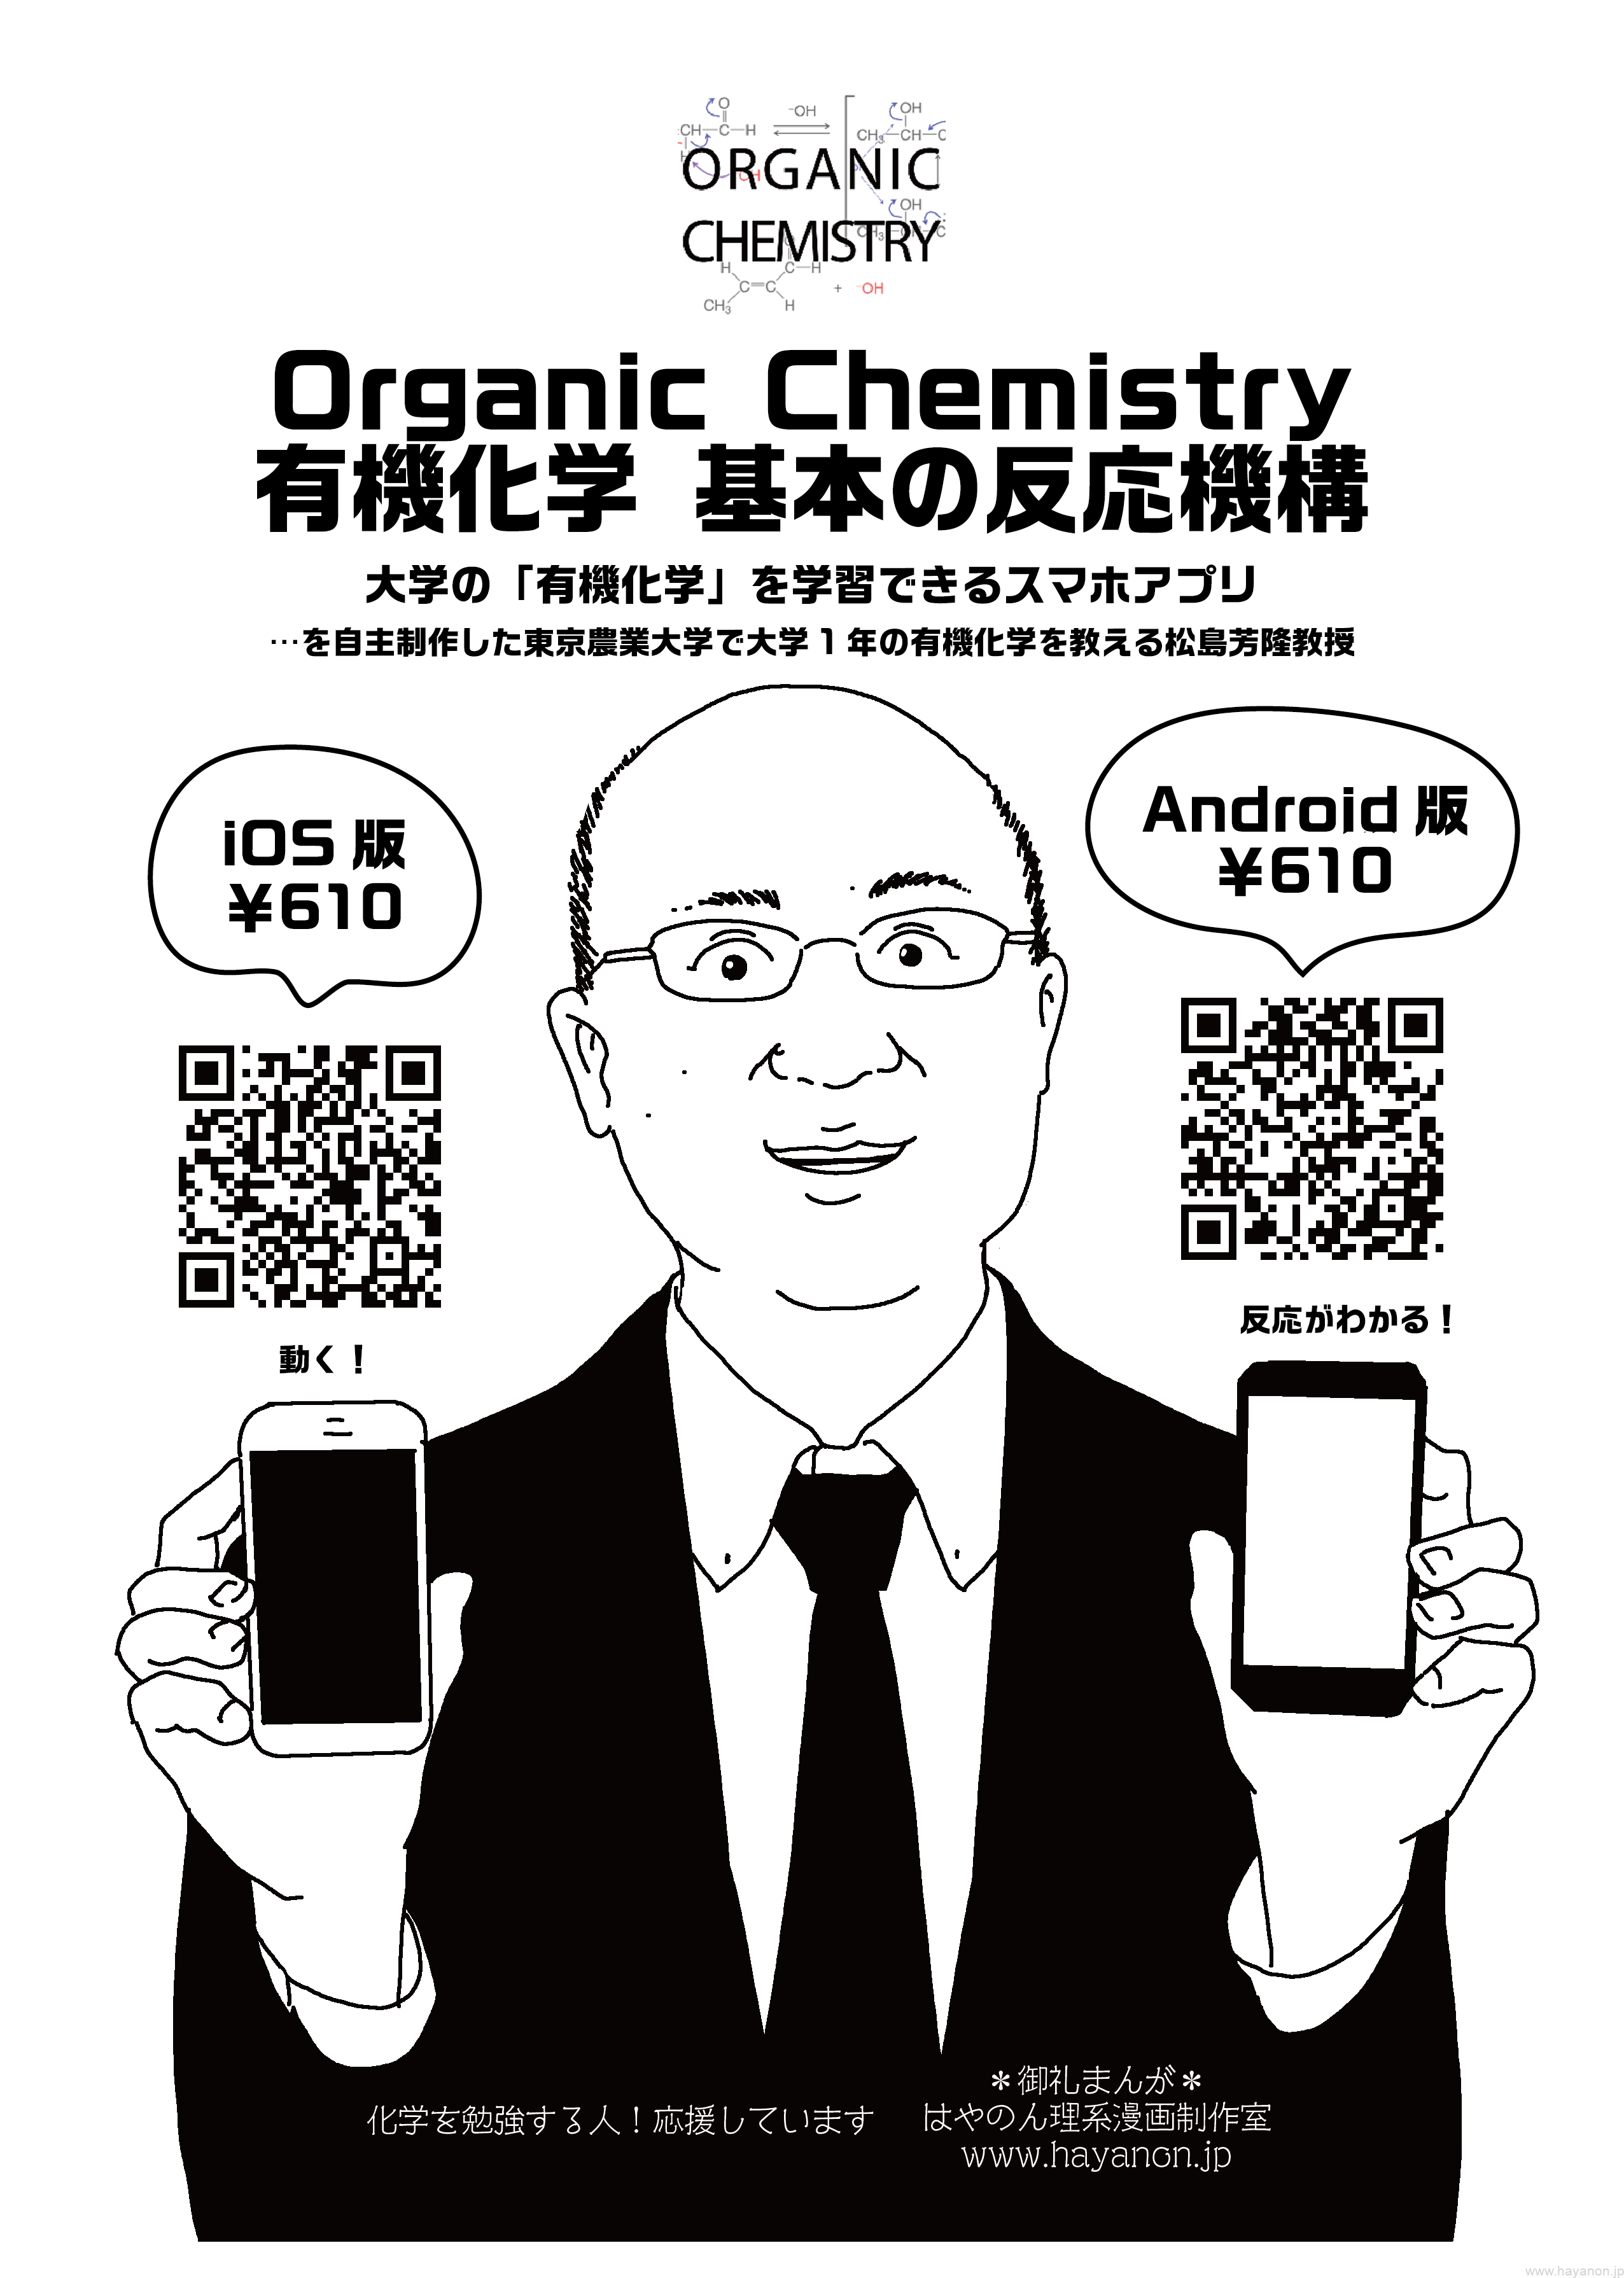 アプリ紹介 Organic Chemistry 有機化学 基本の反応機構 Science Manga Artist Hayanon 理系漫画家はやのん